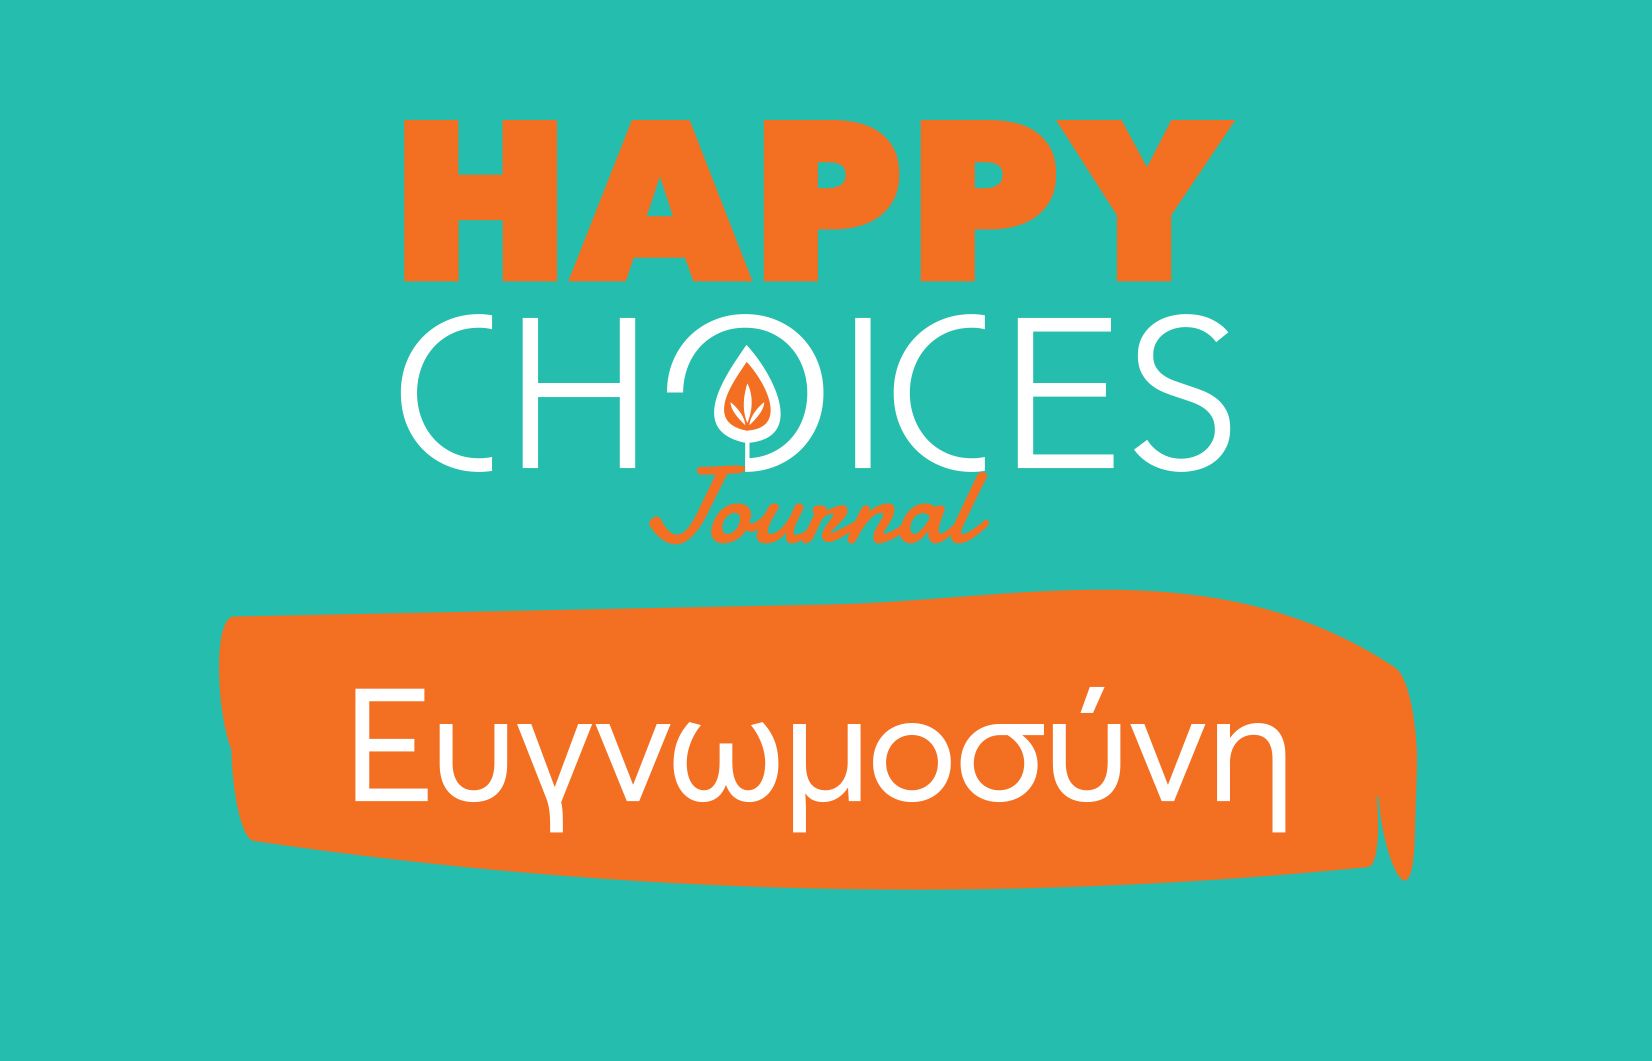 Χριστίνα Πίκουλα: Happy Choices Journal «Ευγνωμοσύνη»